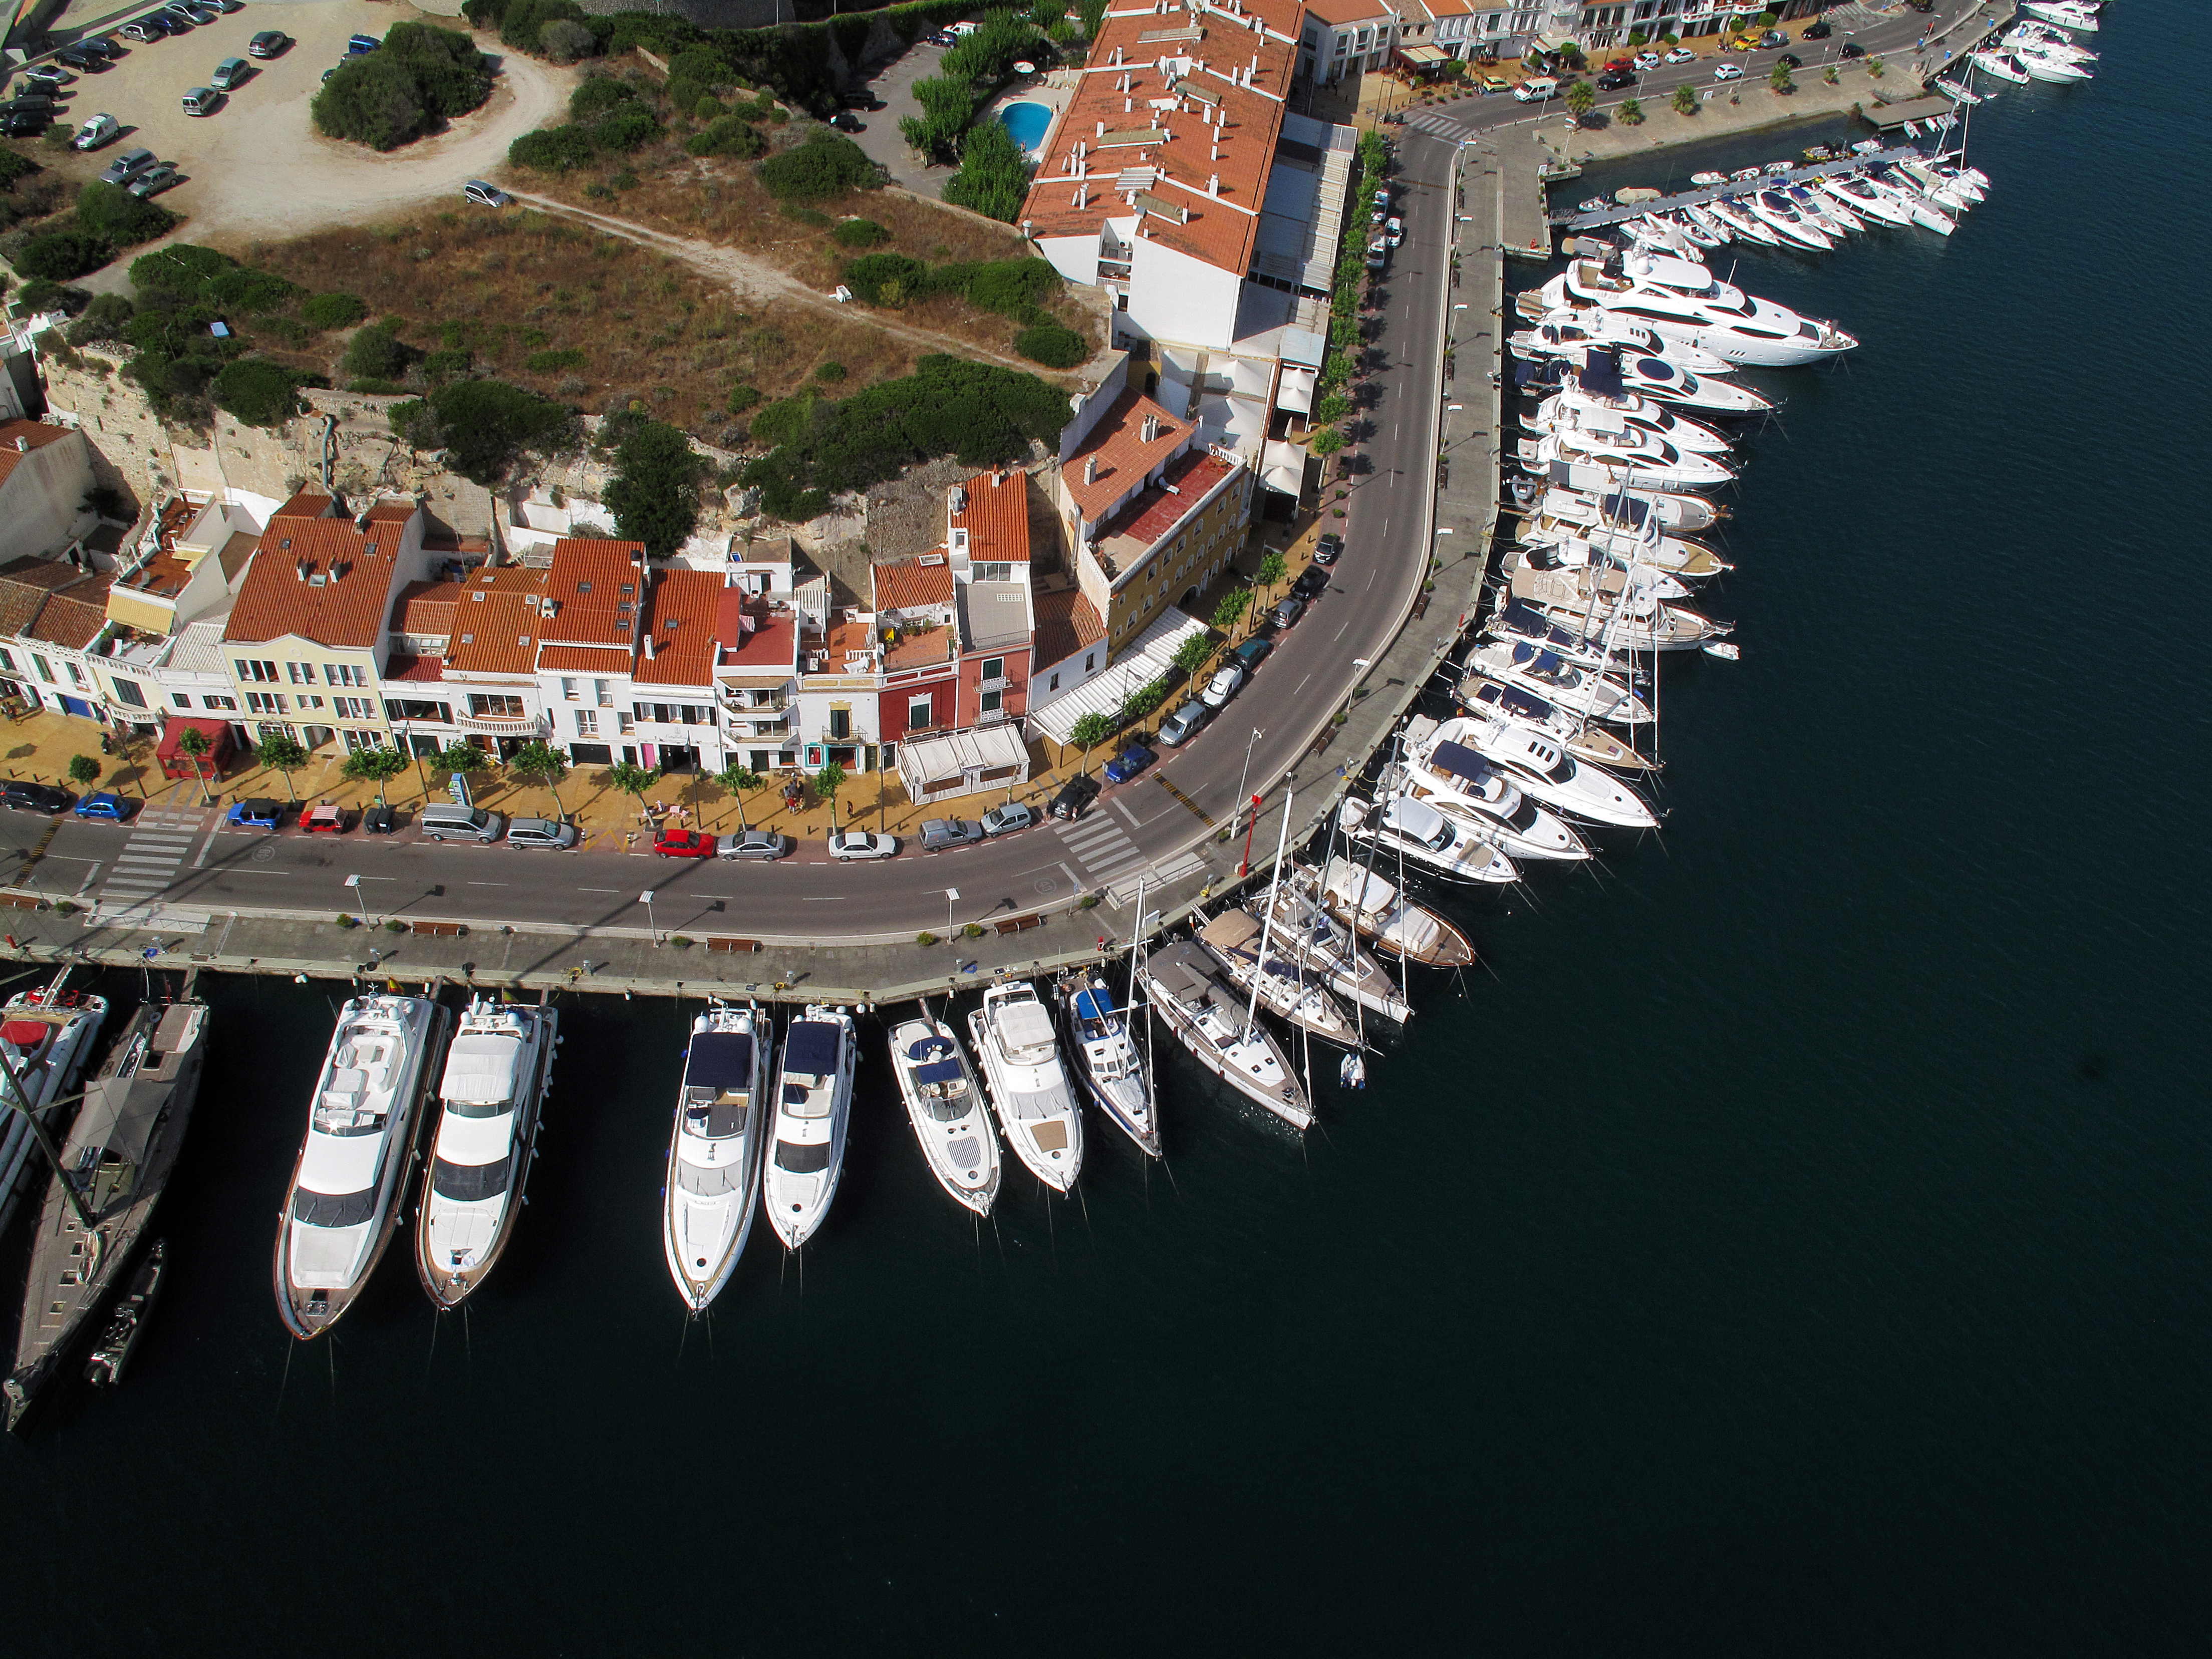 Aprobadas las bases del concurso para la gestión de los amarres en la zona del varadero d’en Reynés en el puerto de Maó